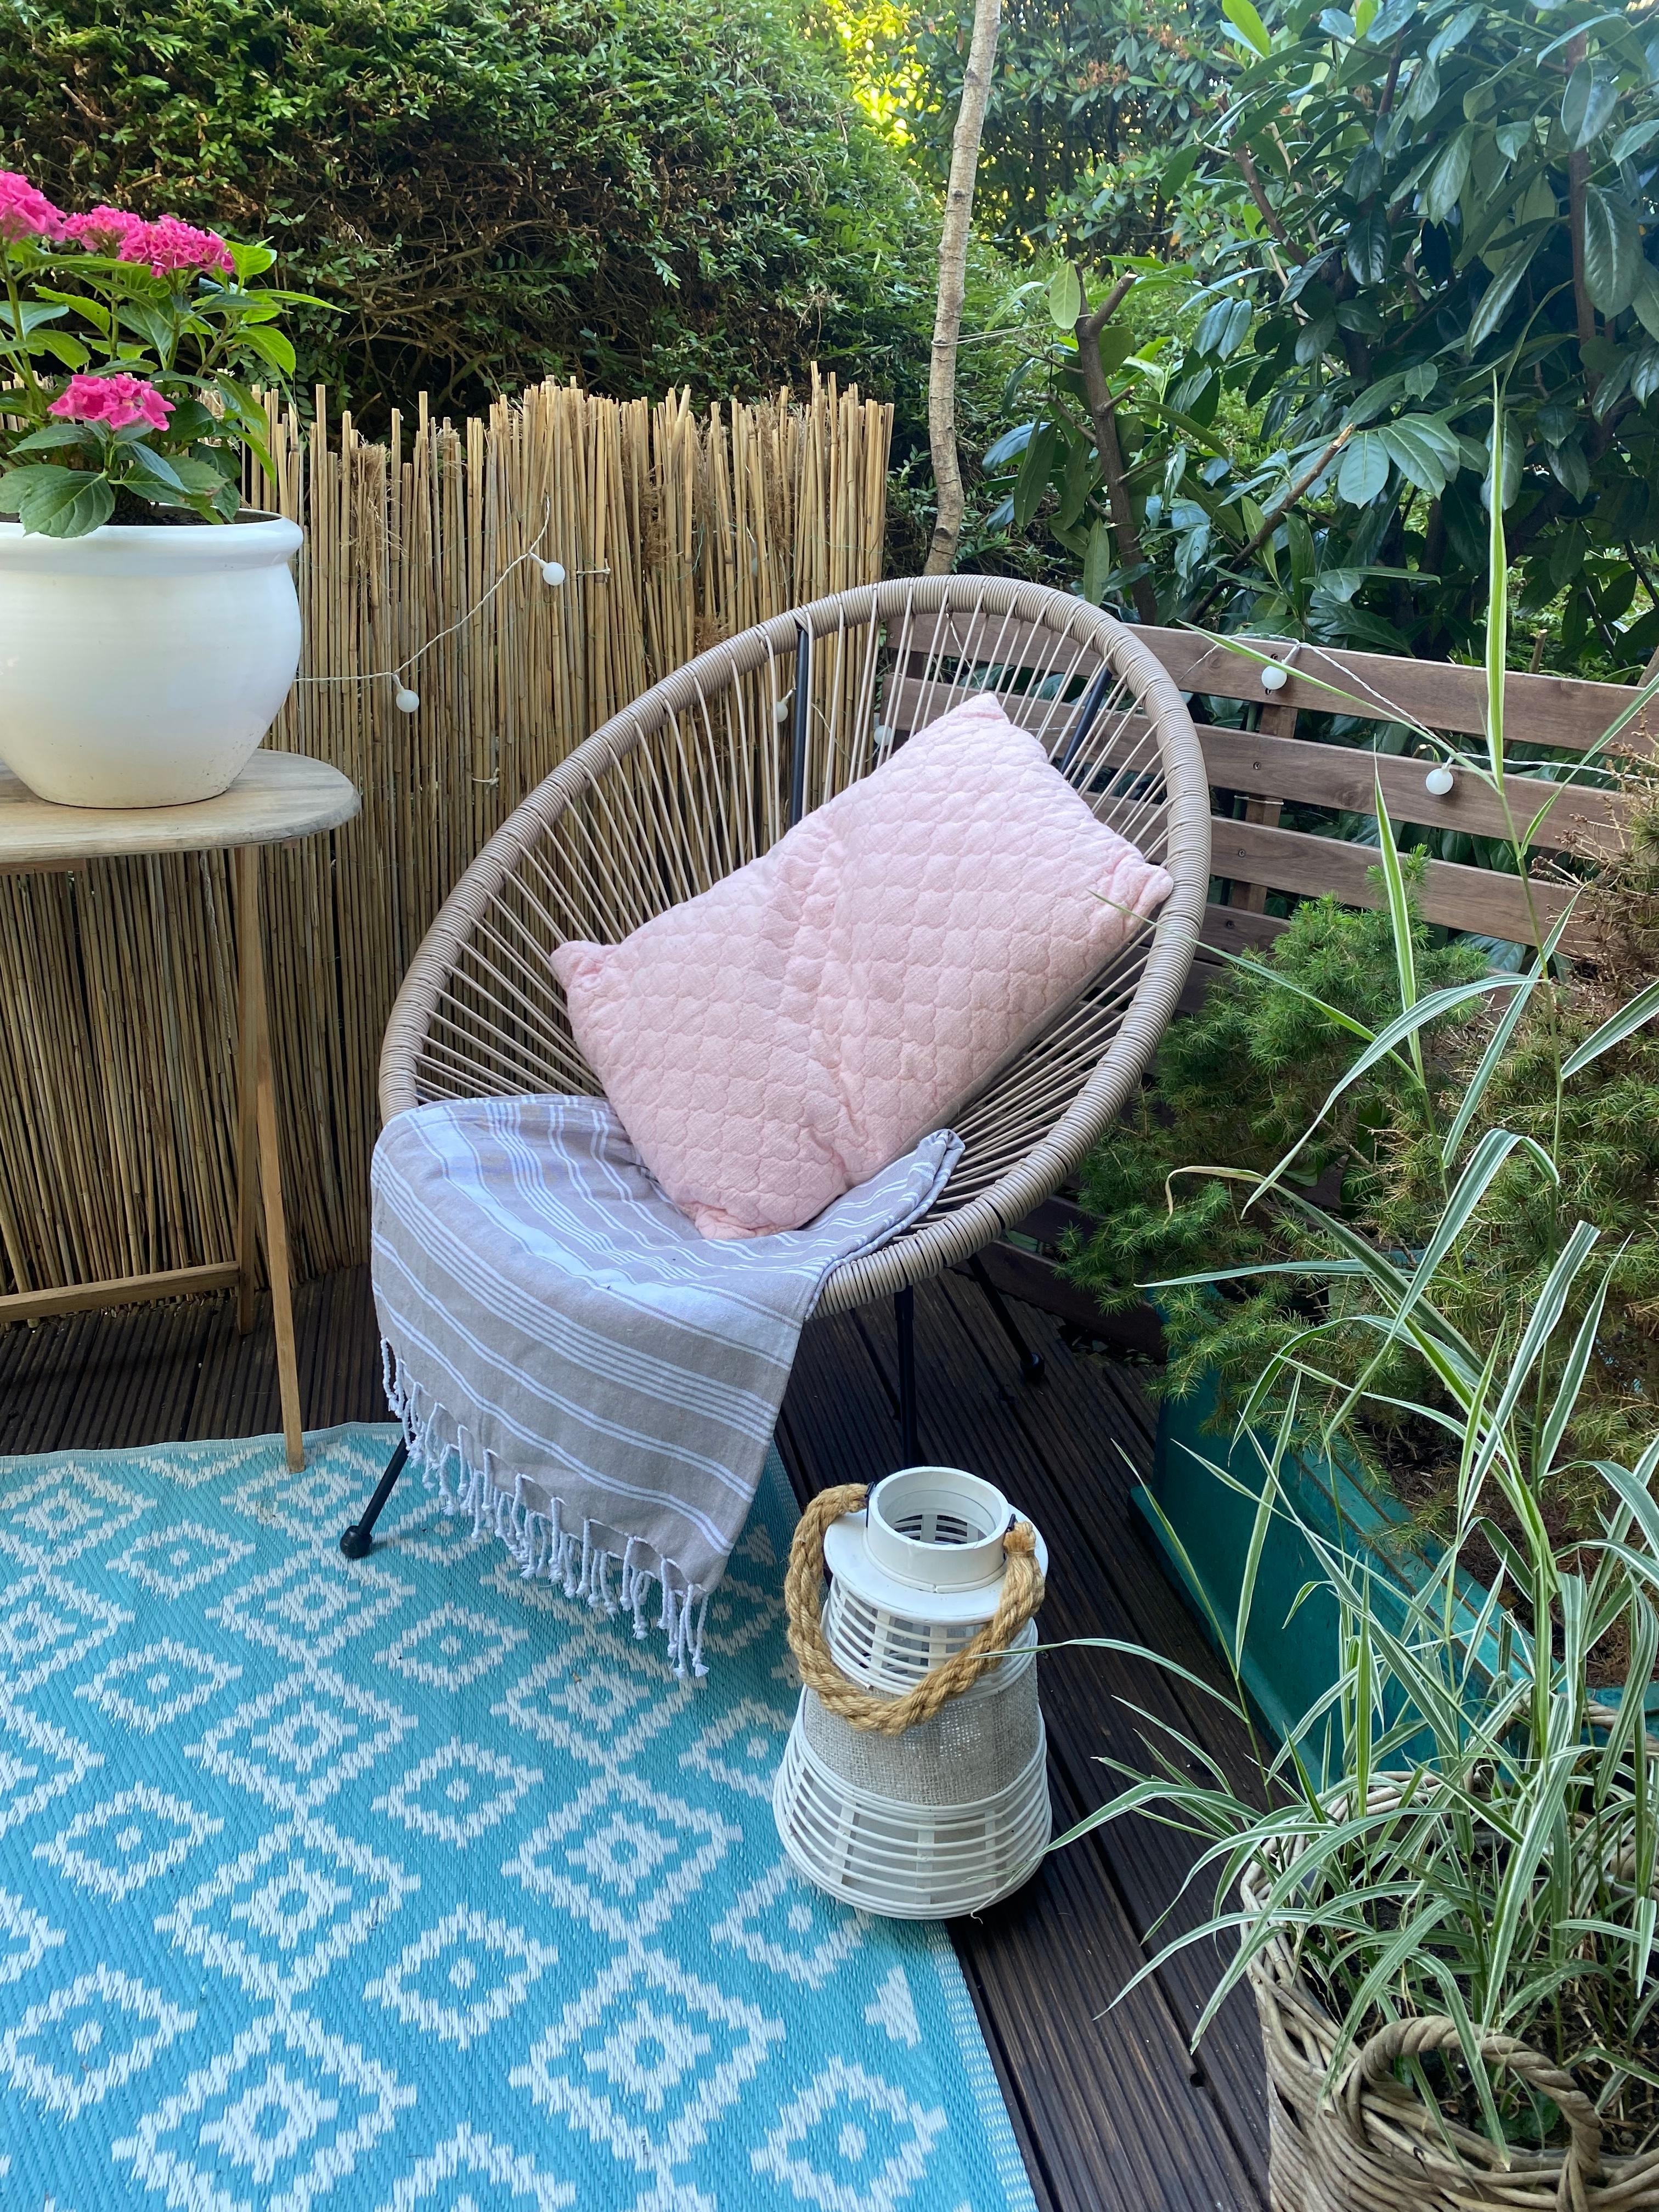 Meine kleine Oase 🪴🪴🪴
#garten #terrasse #couchstyle #bohostyle #grünerleben #kleinergarten #oase #outdoorteppich 